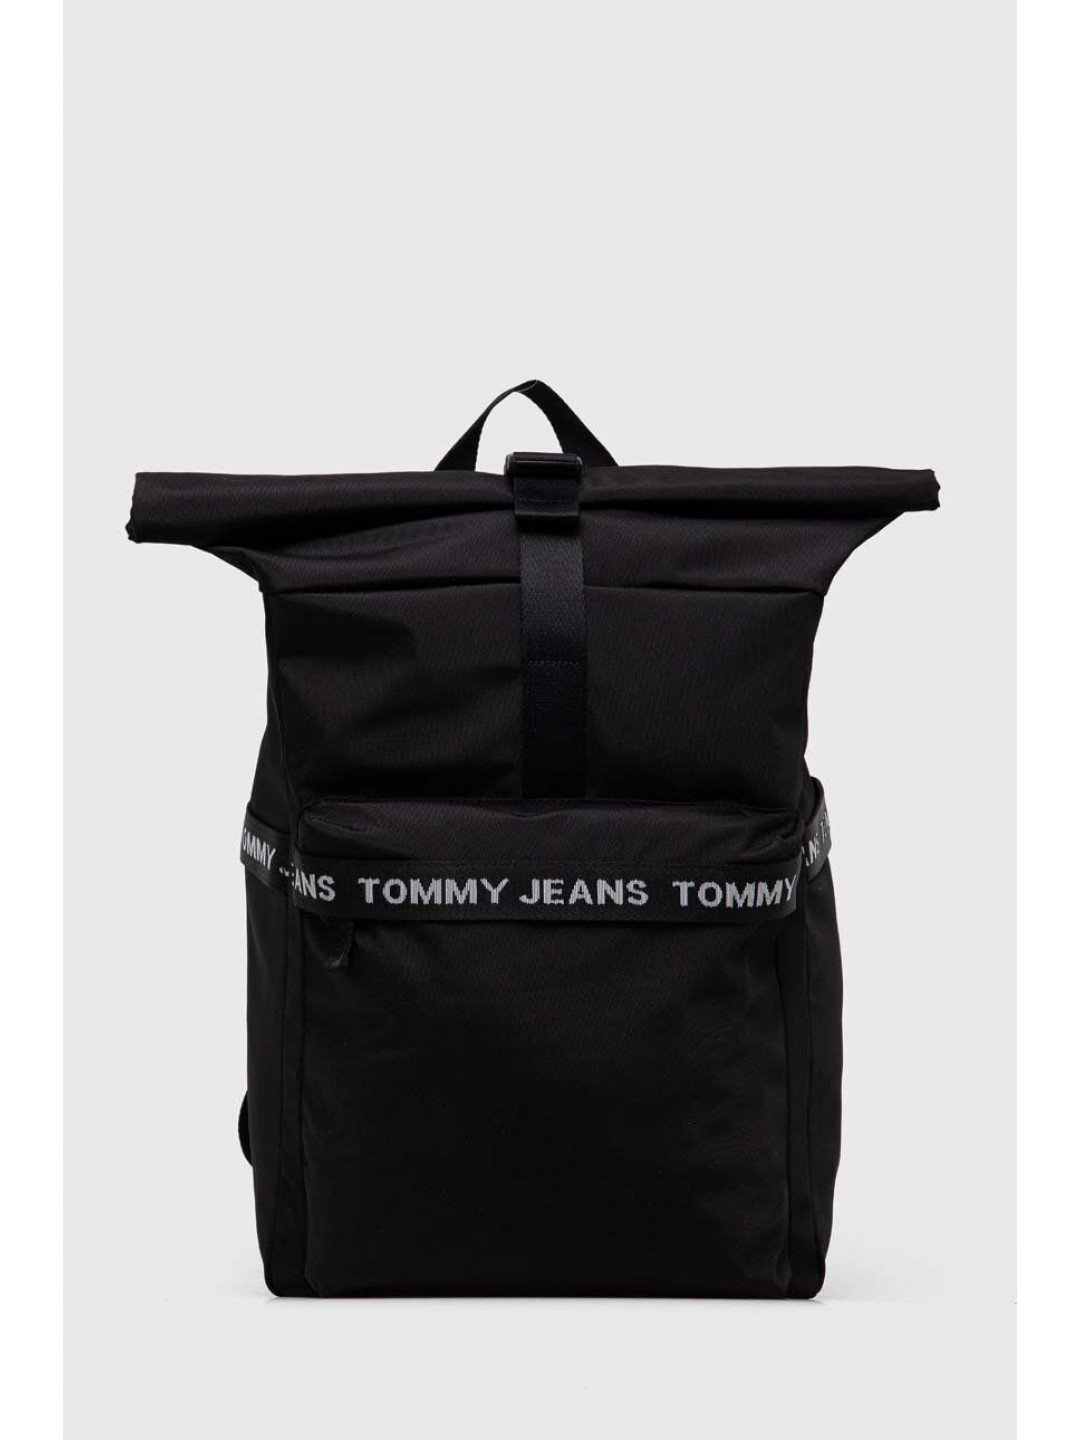 Batoh Tommy Jeans pánský černá barva velký s potiskem